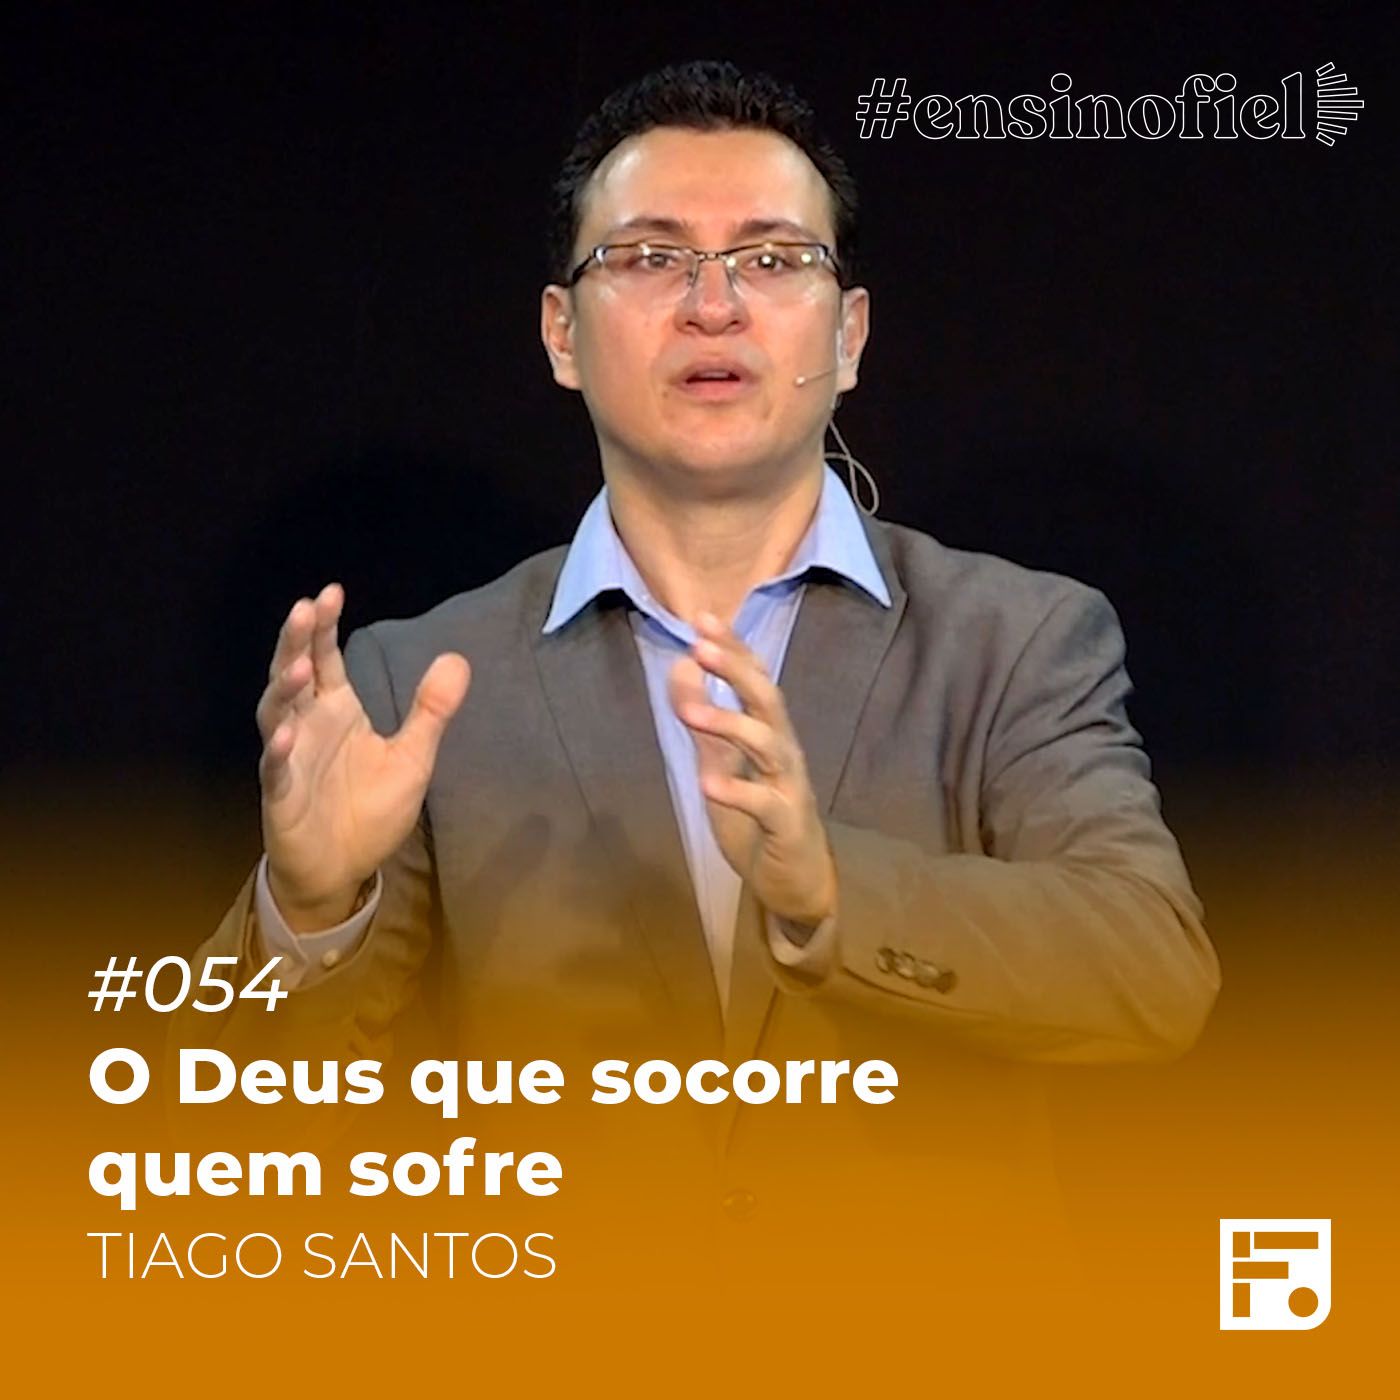 O Deus que socorre quem sofre - Tiago Santos